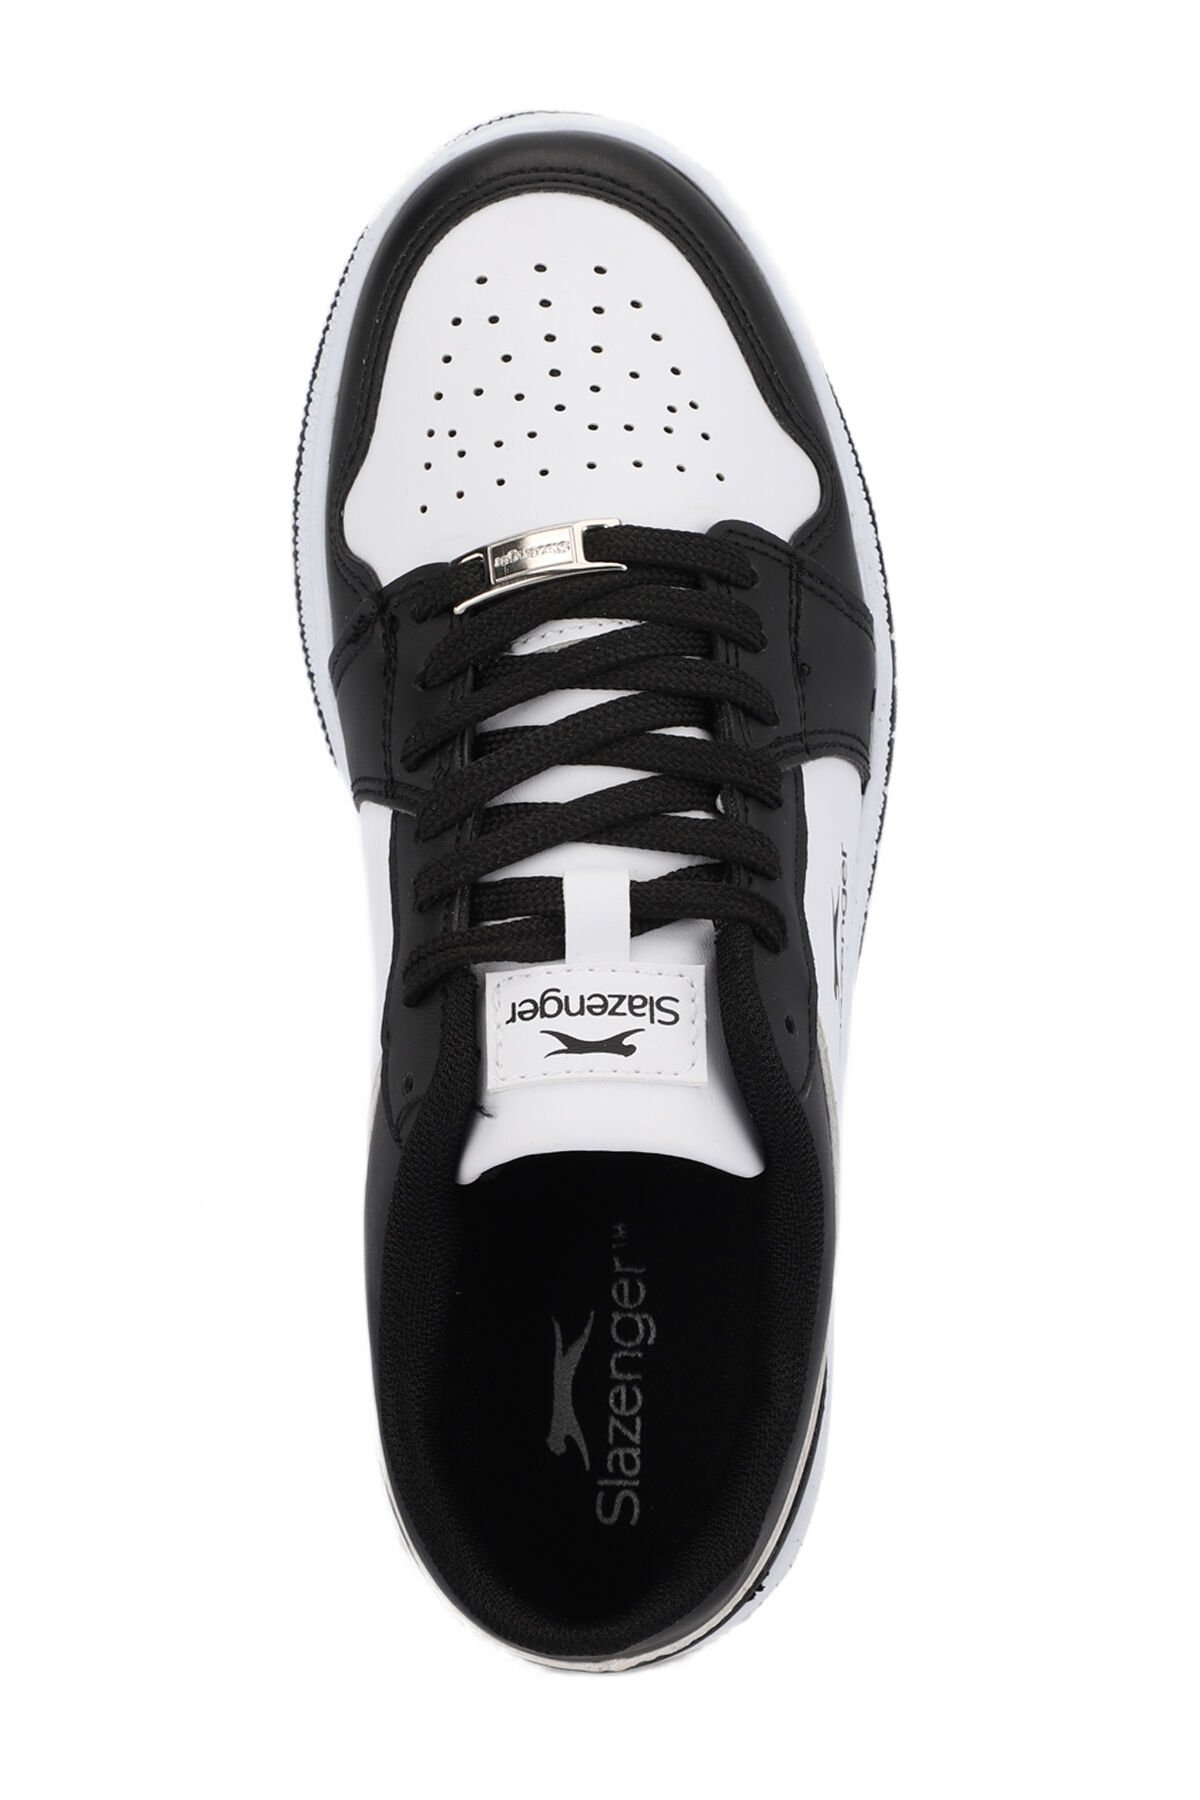 PRINCE I Sneaker Kadın Ayakkabı Beyaz / Siyah - Thumbnail